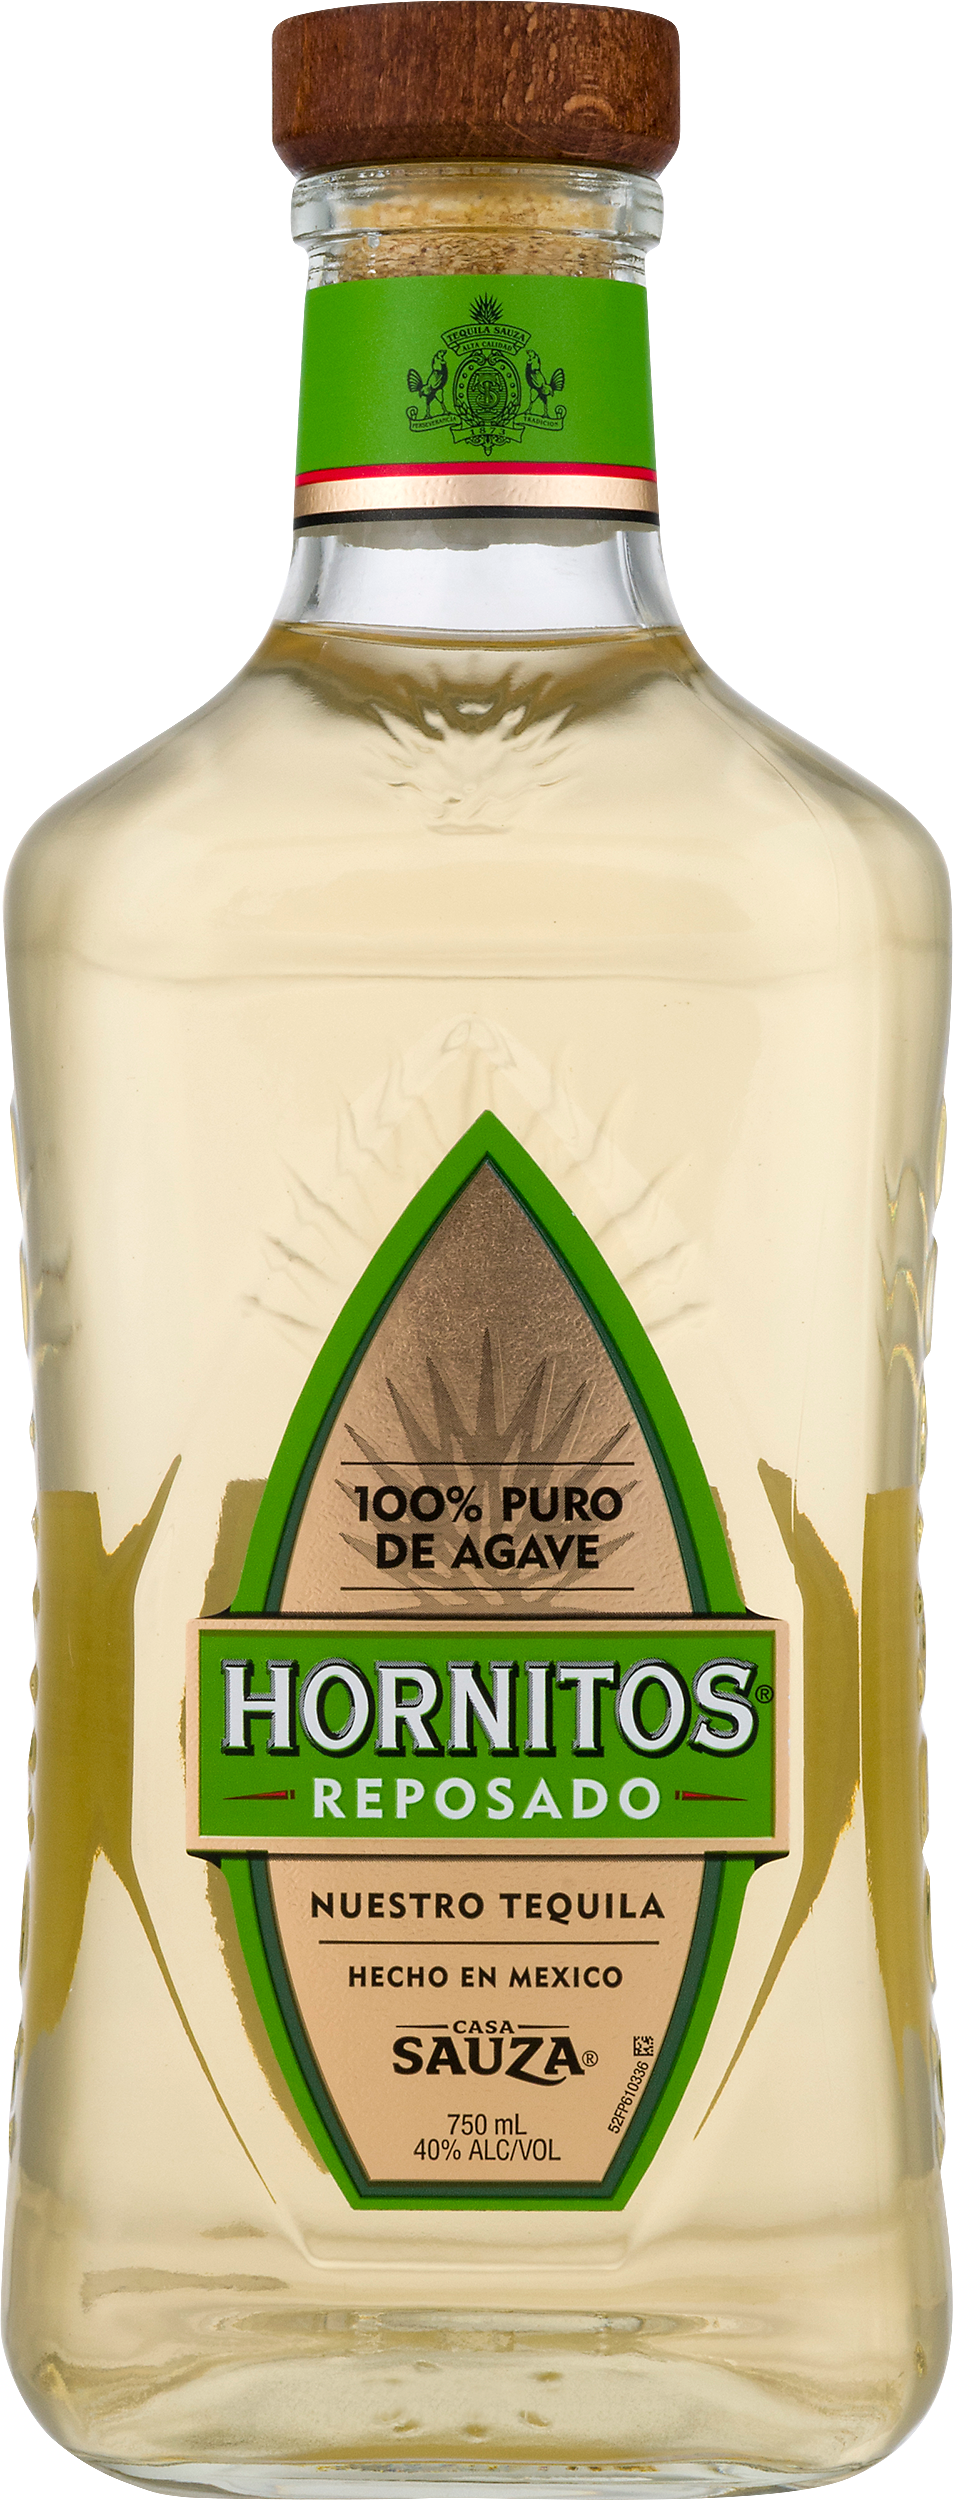 Hornitos Reposado Tequila - 750ml Bottle